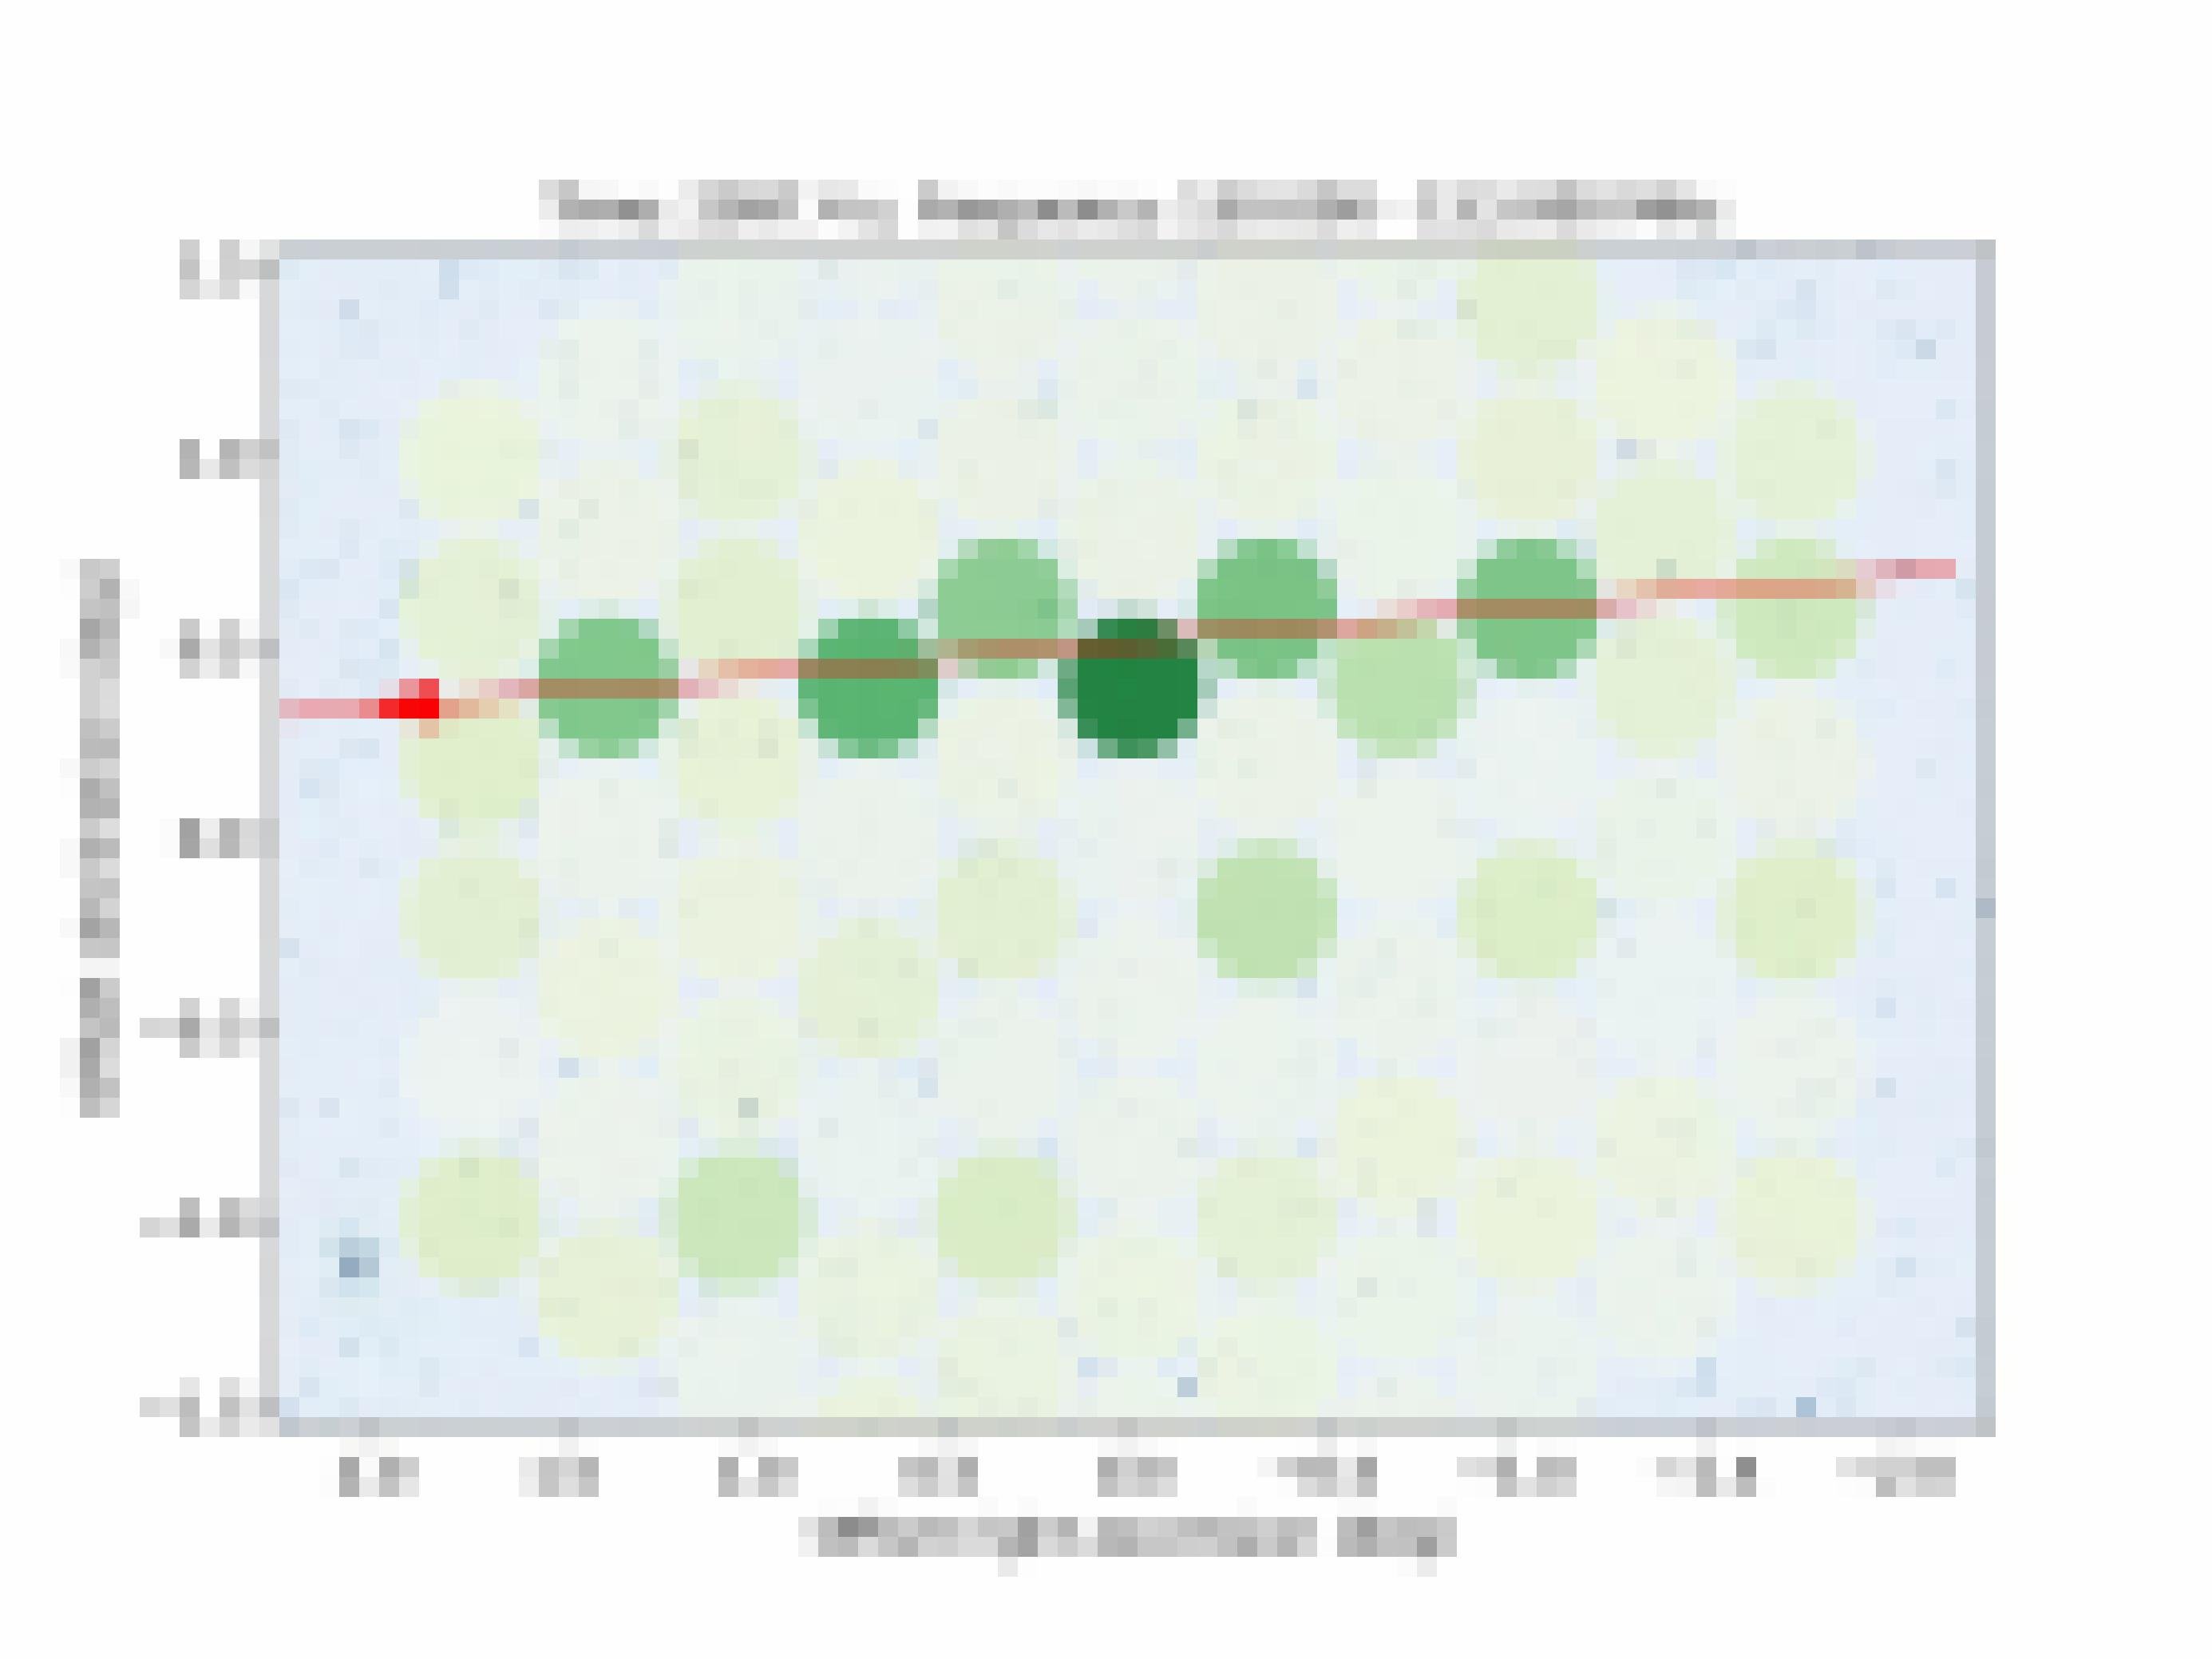 Ein Diagramm, im Hintergrund einige blaue Punkte, die ferne Galaxien zeigen, im Vordergrund grüne Kreise und eine rote Linie von rechts nach links.